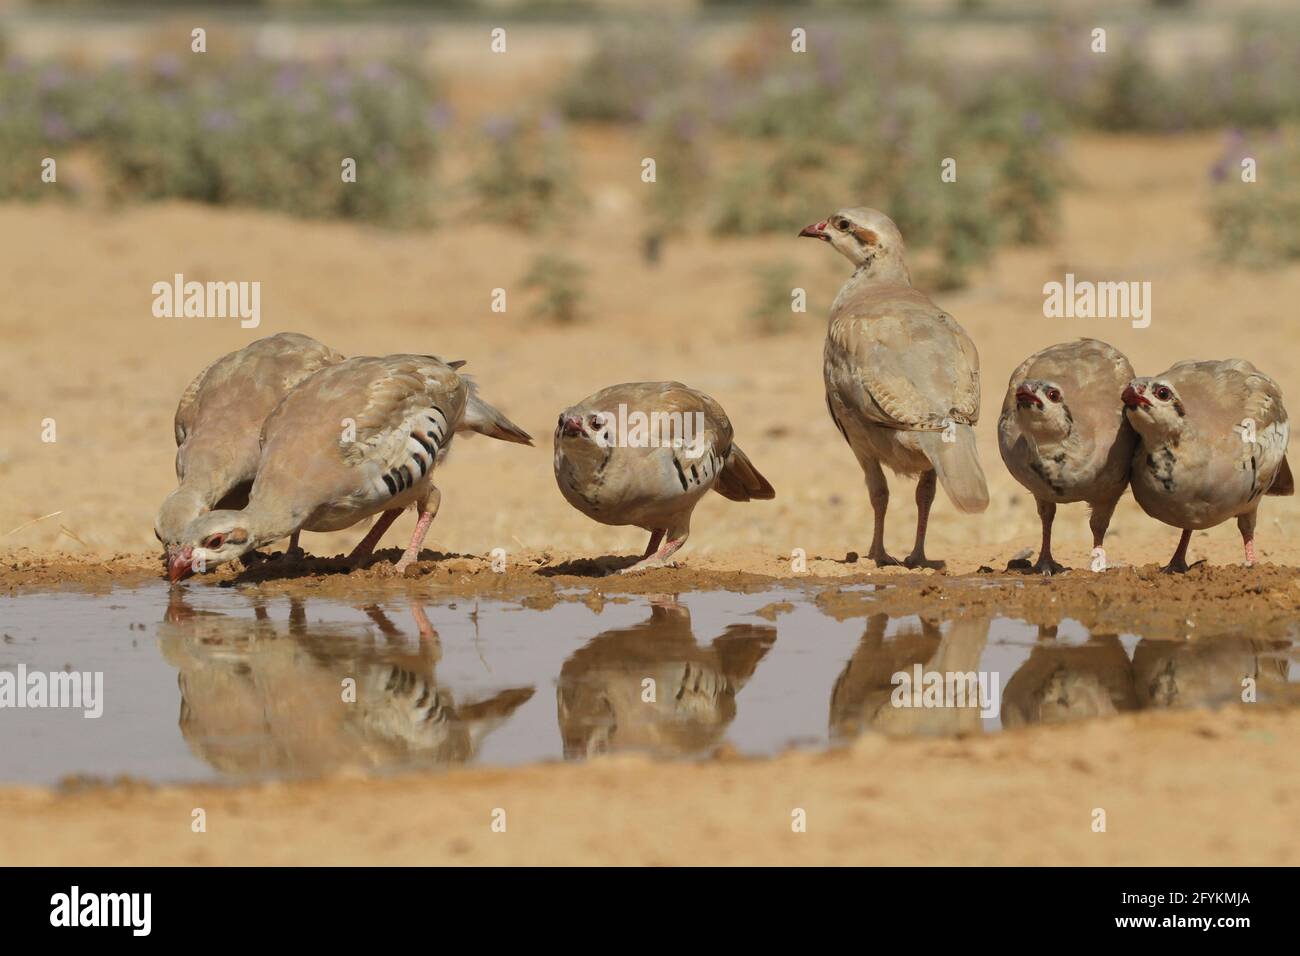 Chukar Partridge oder Chukar (Alectoris chukar) fotografiert in Israel, in der Nähe eines Wasserpools Negev Wüste. Ein paläarktischer Hochland-Gamebird im Fasanenfam Stockfoto